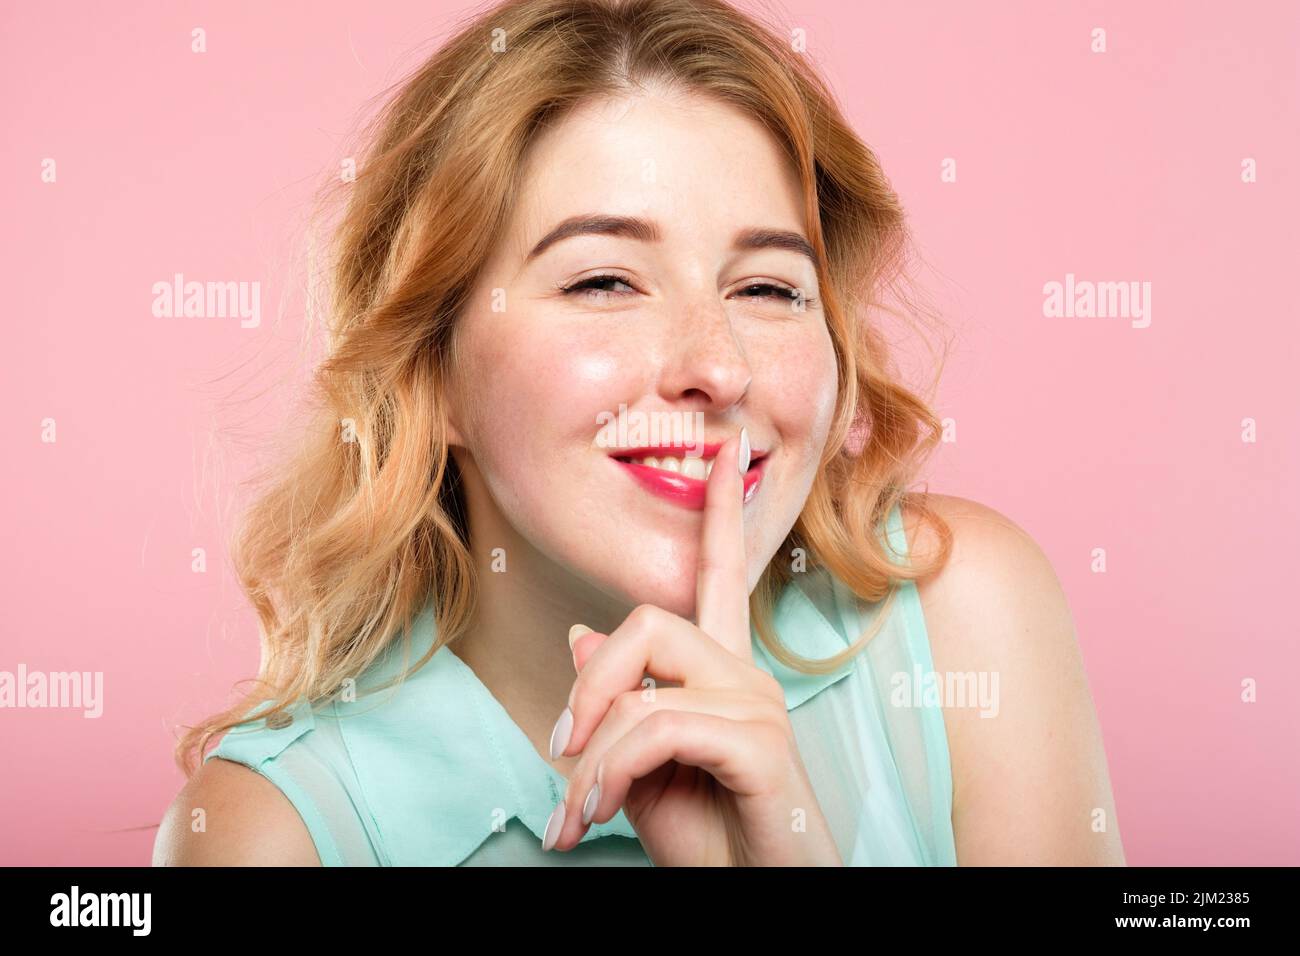 girl keep secret mystery finger on lips Stock Photo